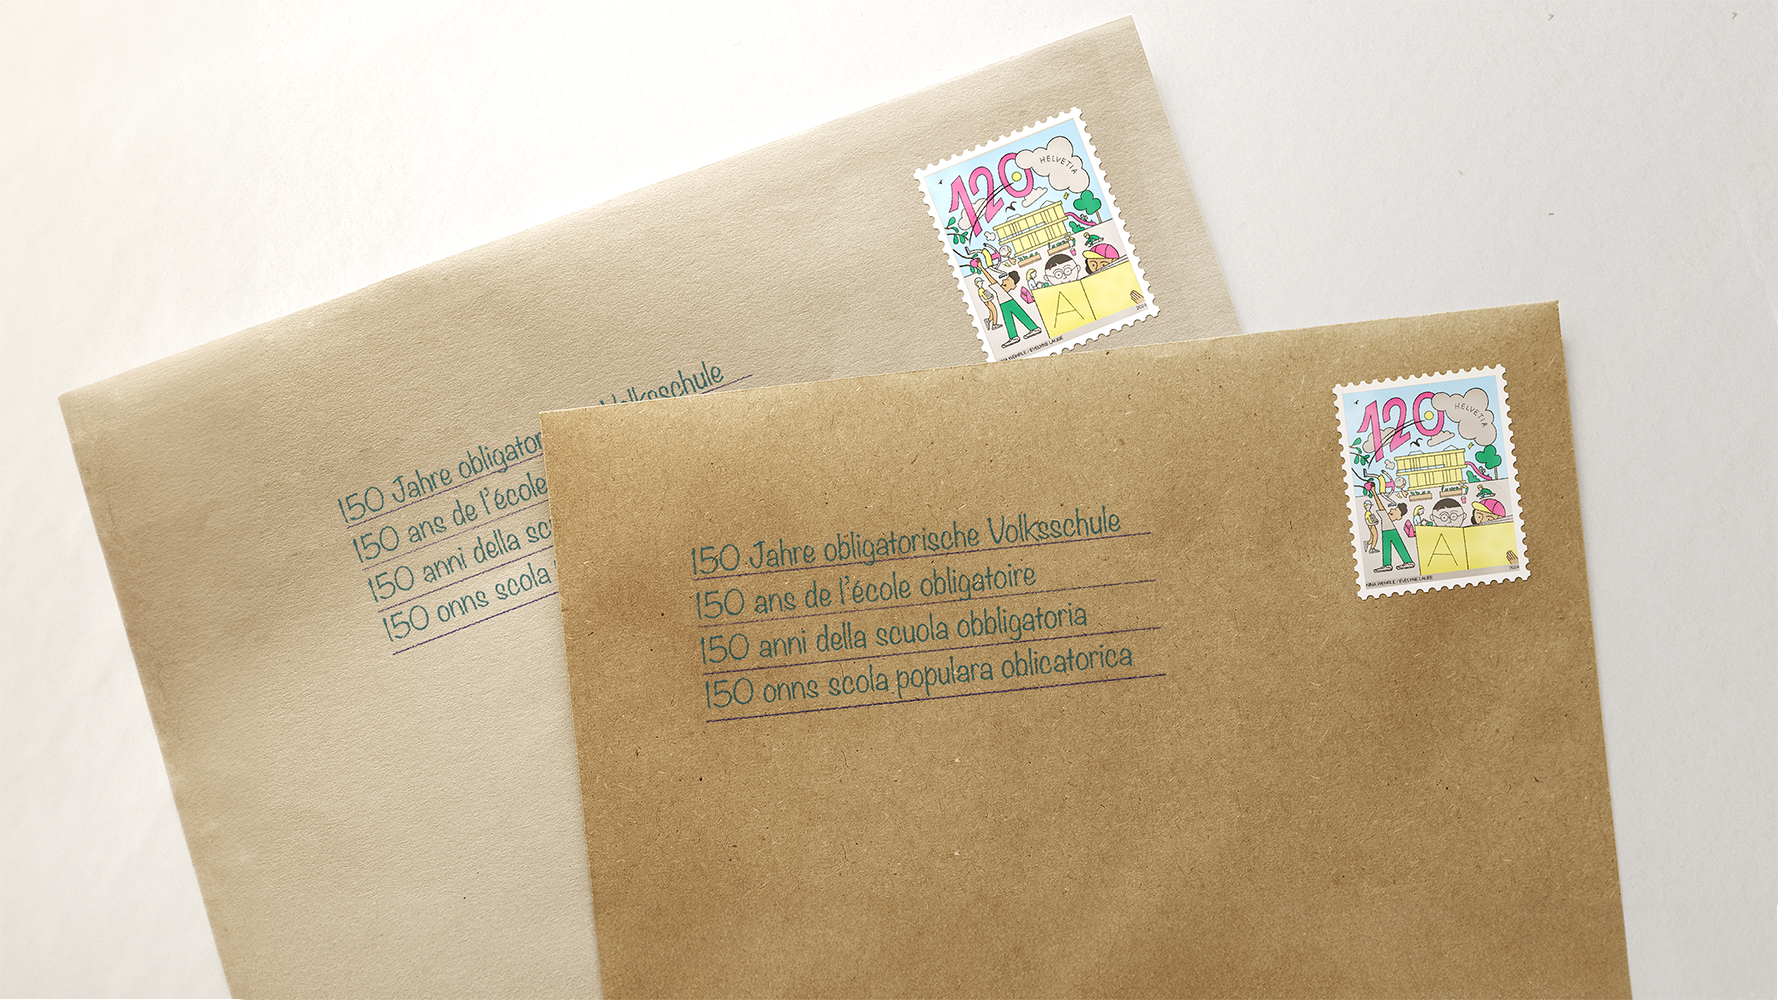 Kuverts mit Aufschrift 150 Jahre obligatorische Schulpflicht und Jubiläumsbriefmarke der Post